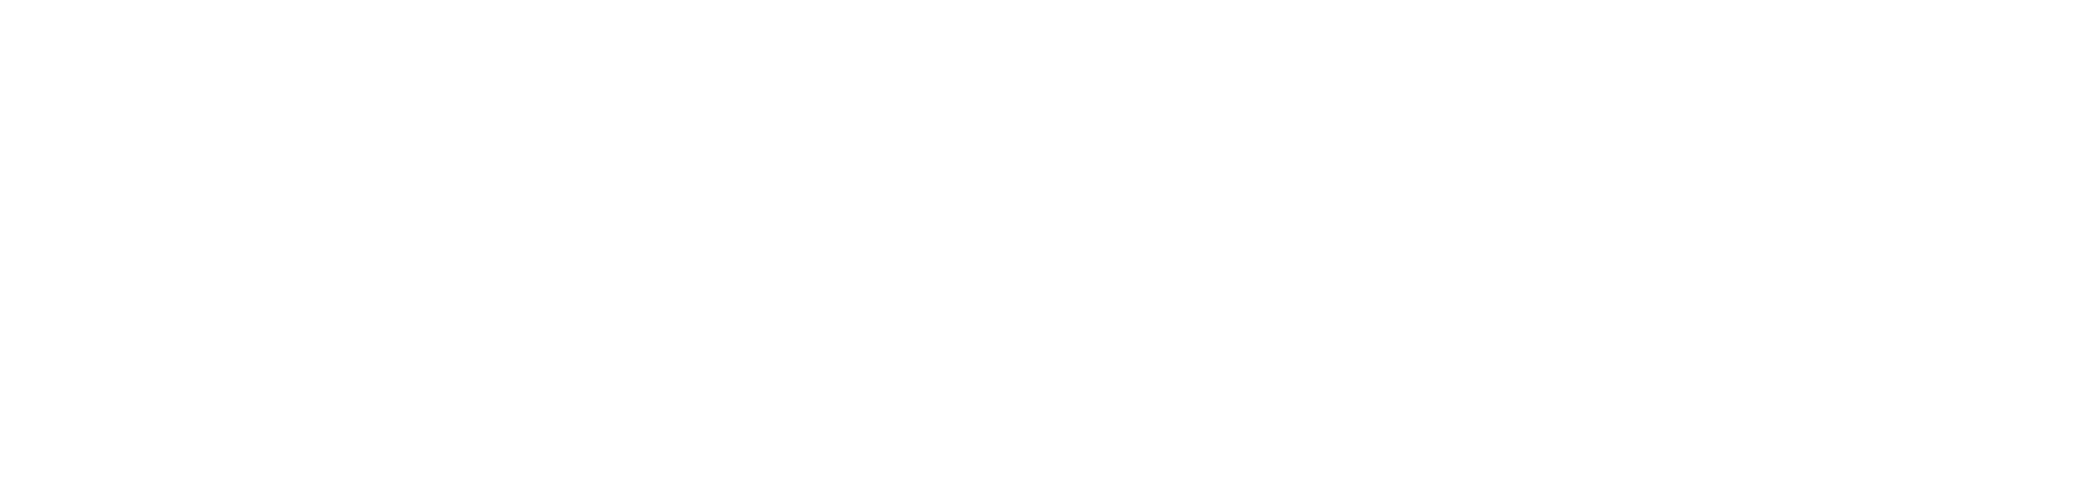 WhatsApp et Messenger pour équipes